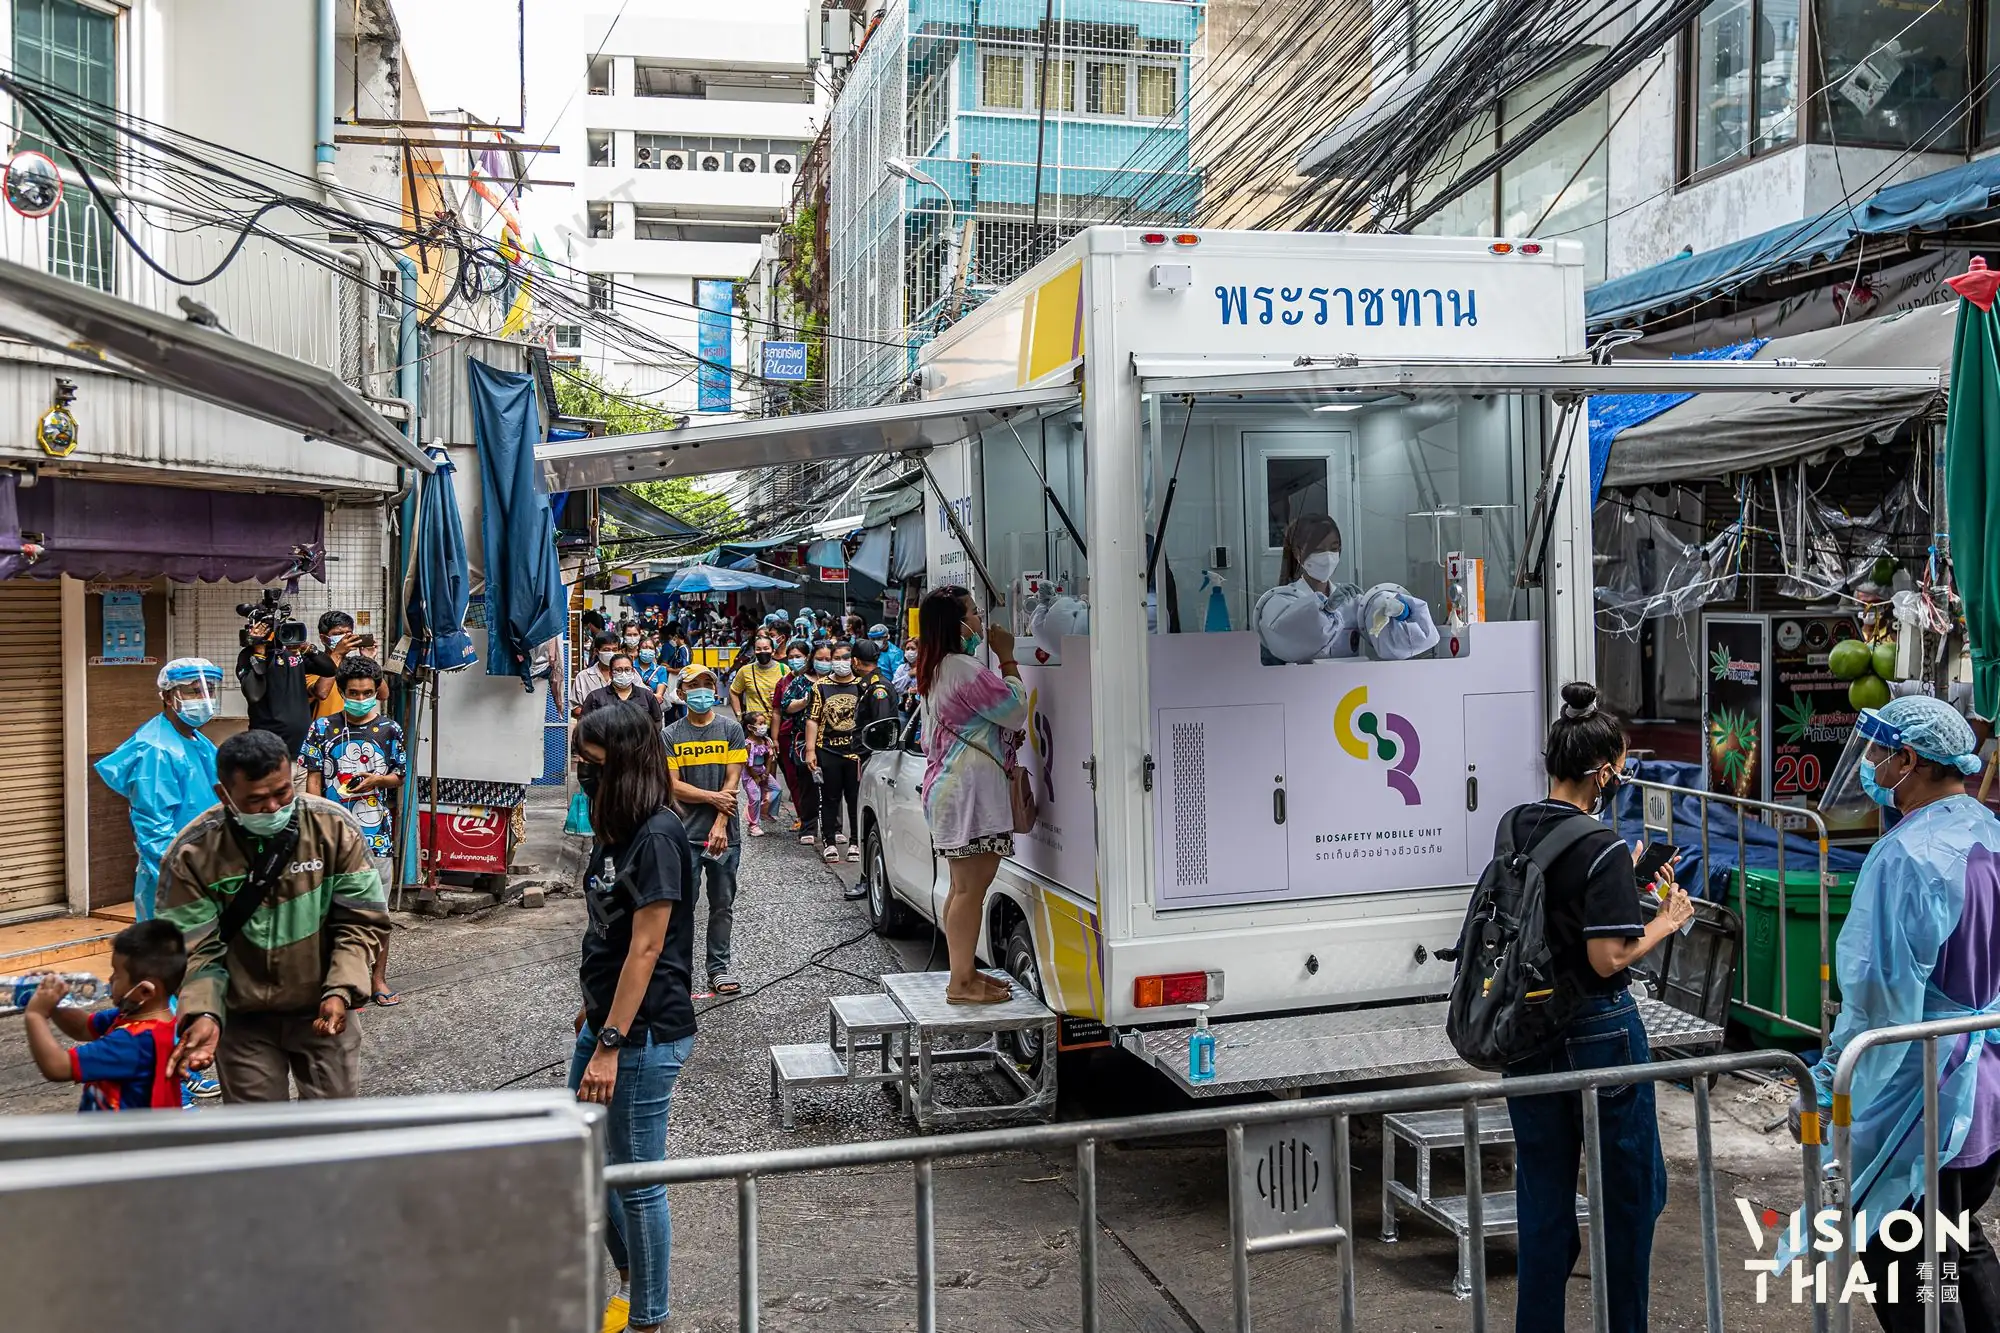 曼谷商圈市場傳疫情 今起大規模篩檢（圖片來源：VISION THAI看見泰國）